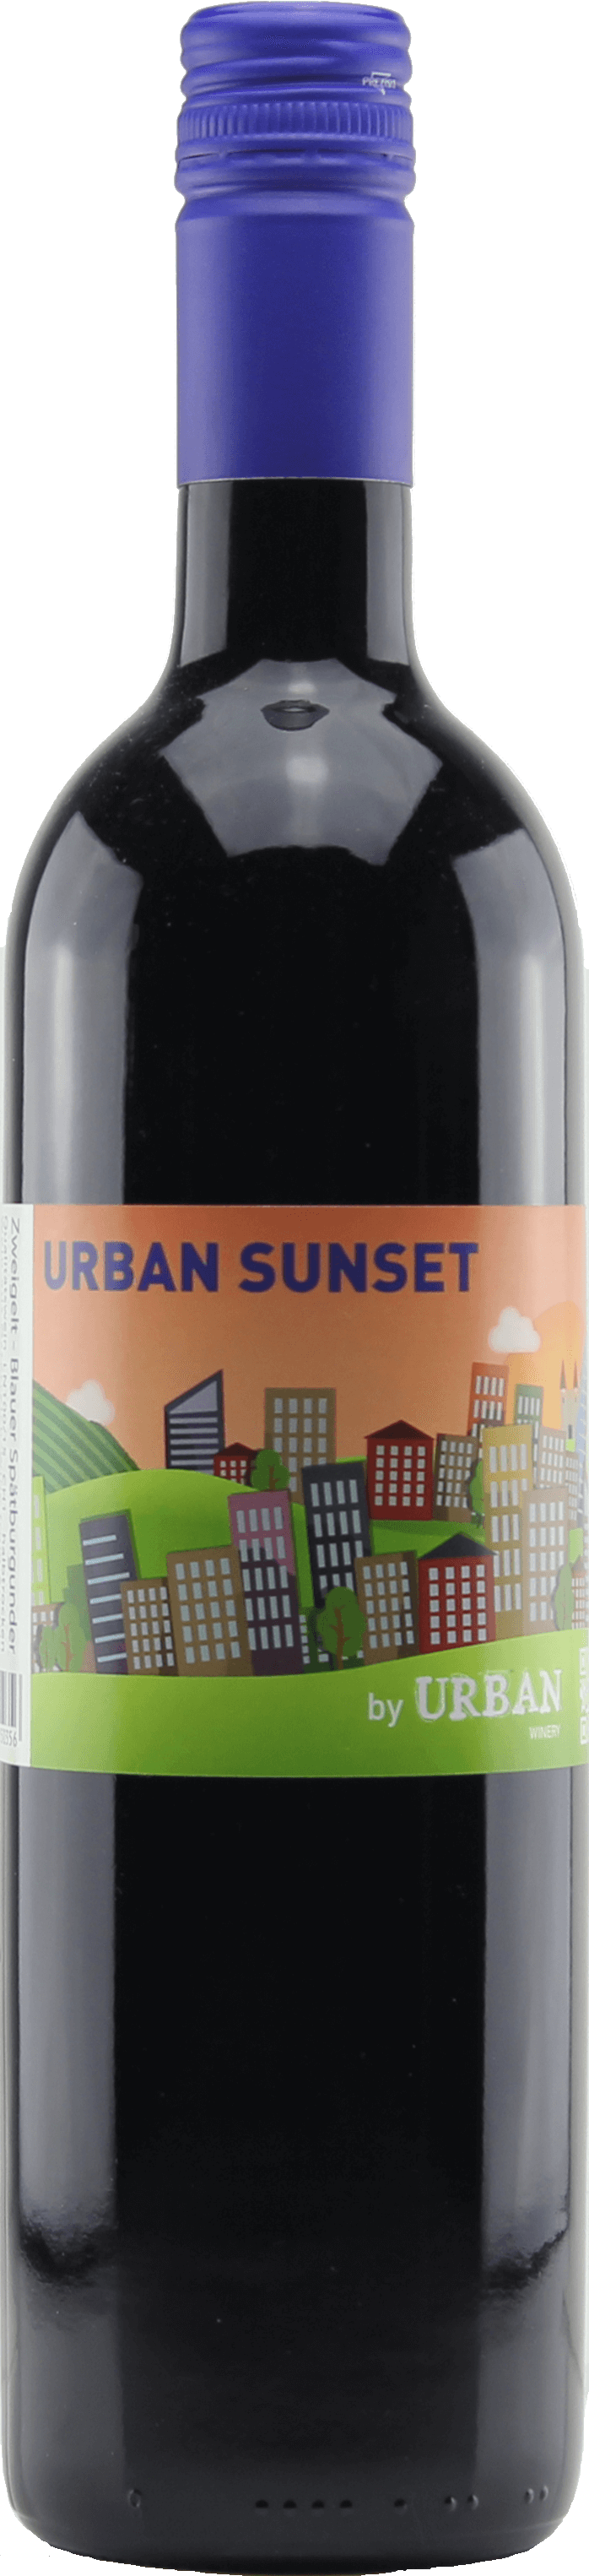 Urban Sunset Cuveé Blauer | 2020 Zweigelt Portugieser INOFILOS